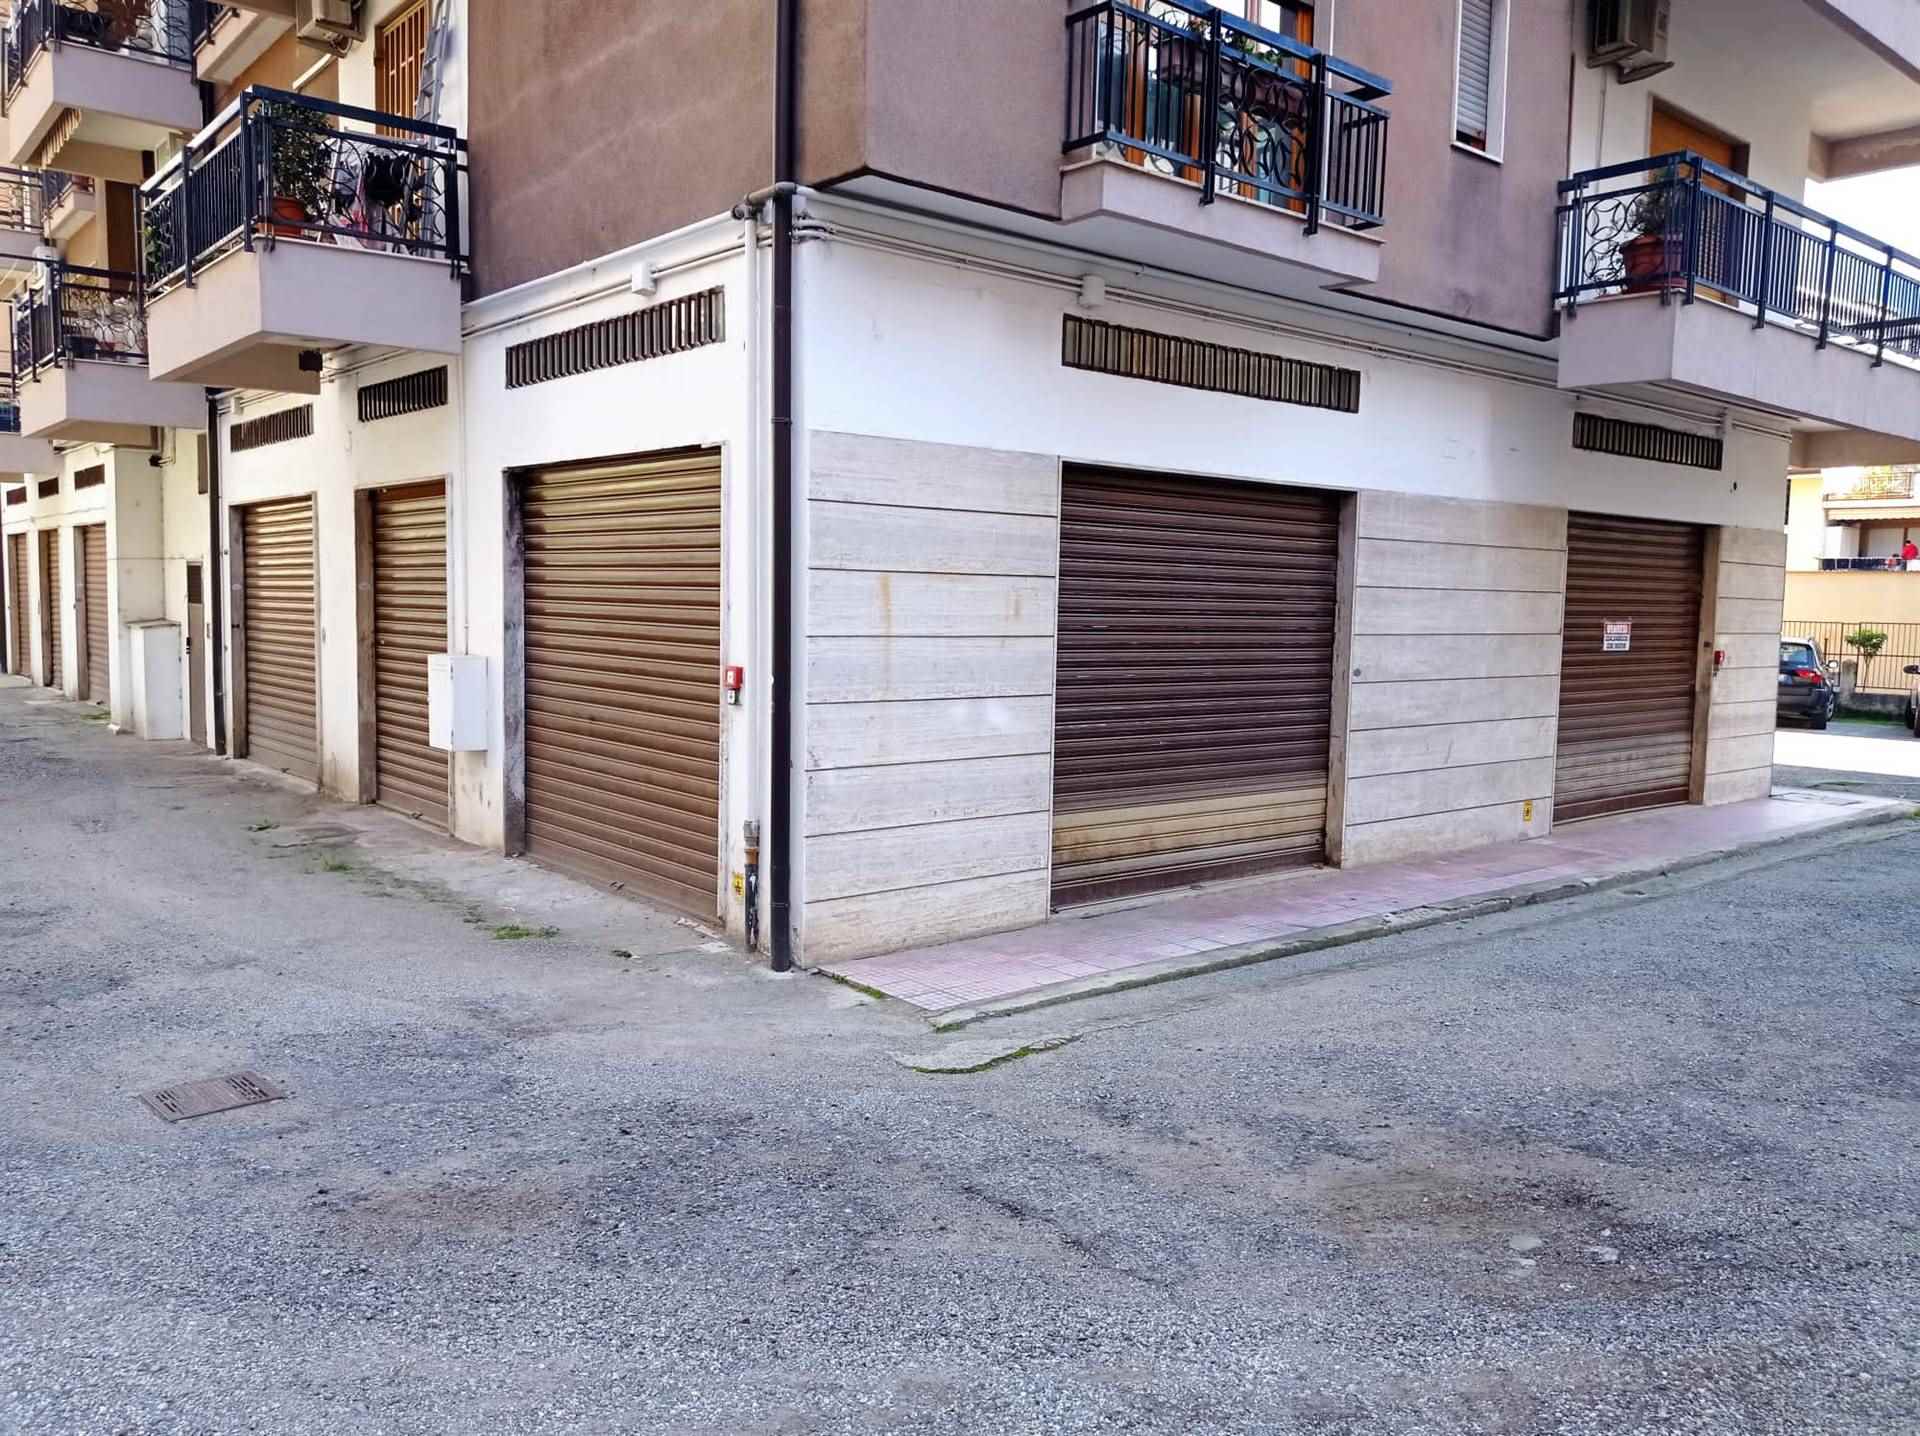 Immobile Commerciale in vendita a Cosenza, 1 locali, zona Panebianco, prezzo € 60.000 | PortaleAgenzieImmobiliari.it